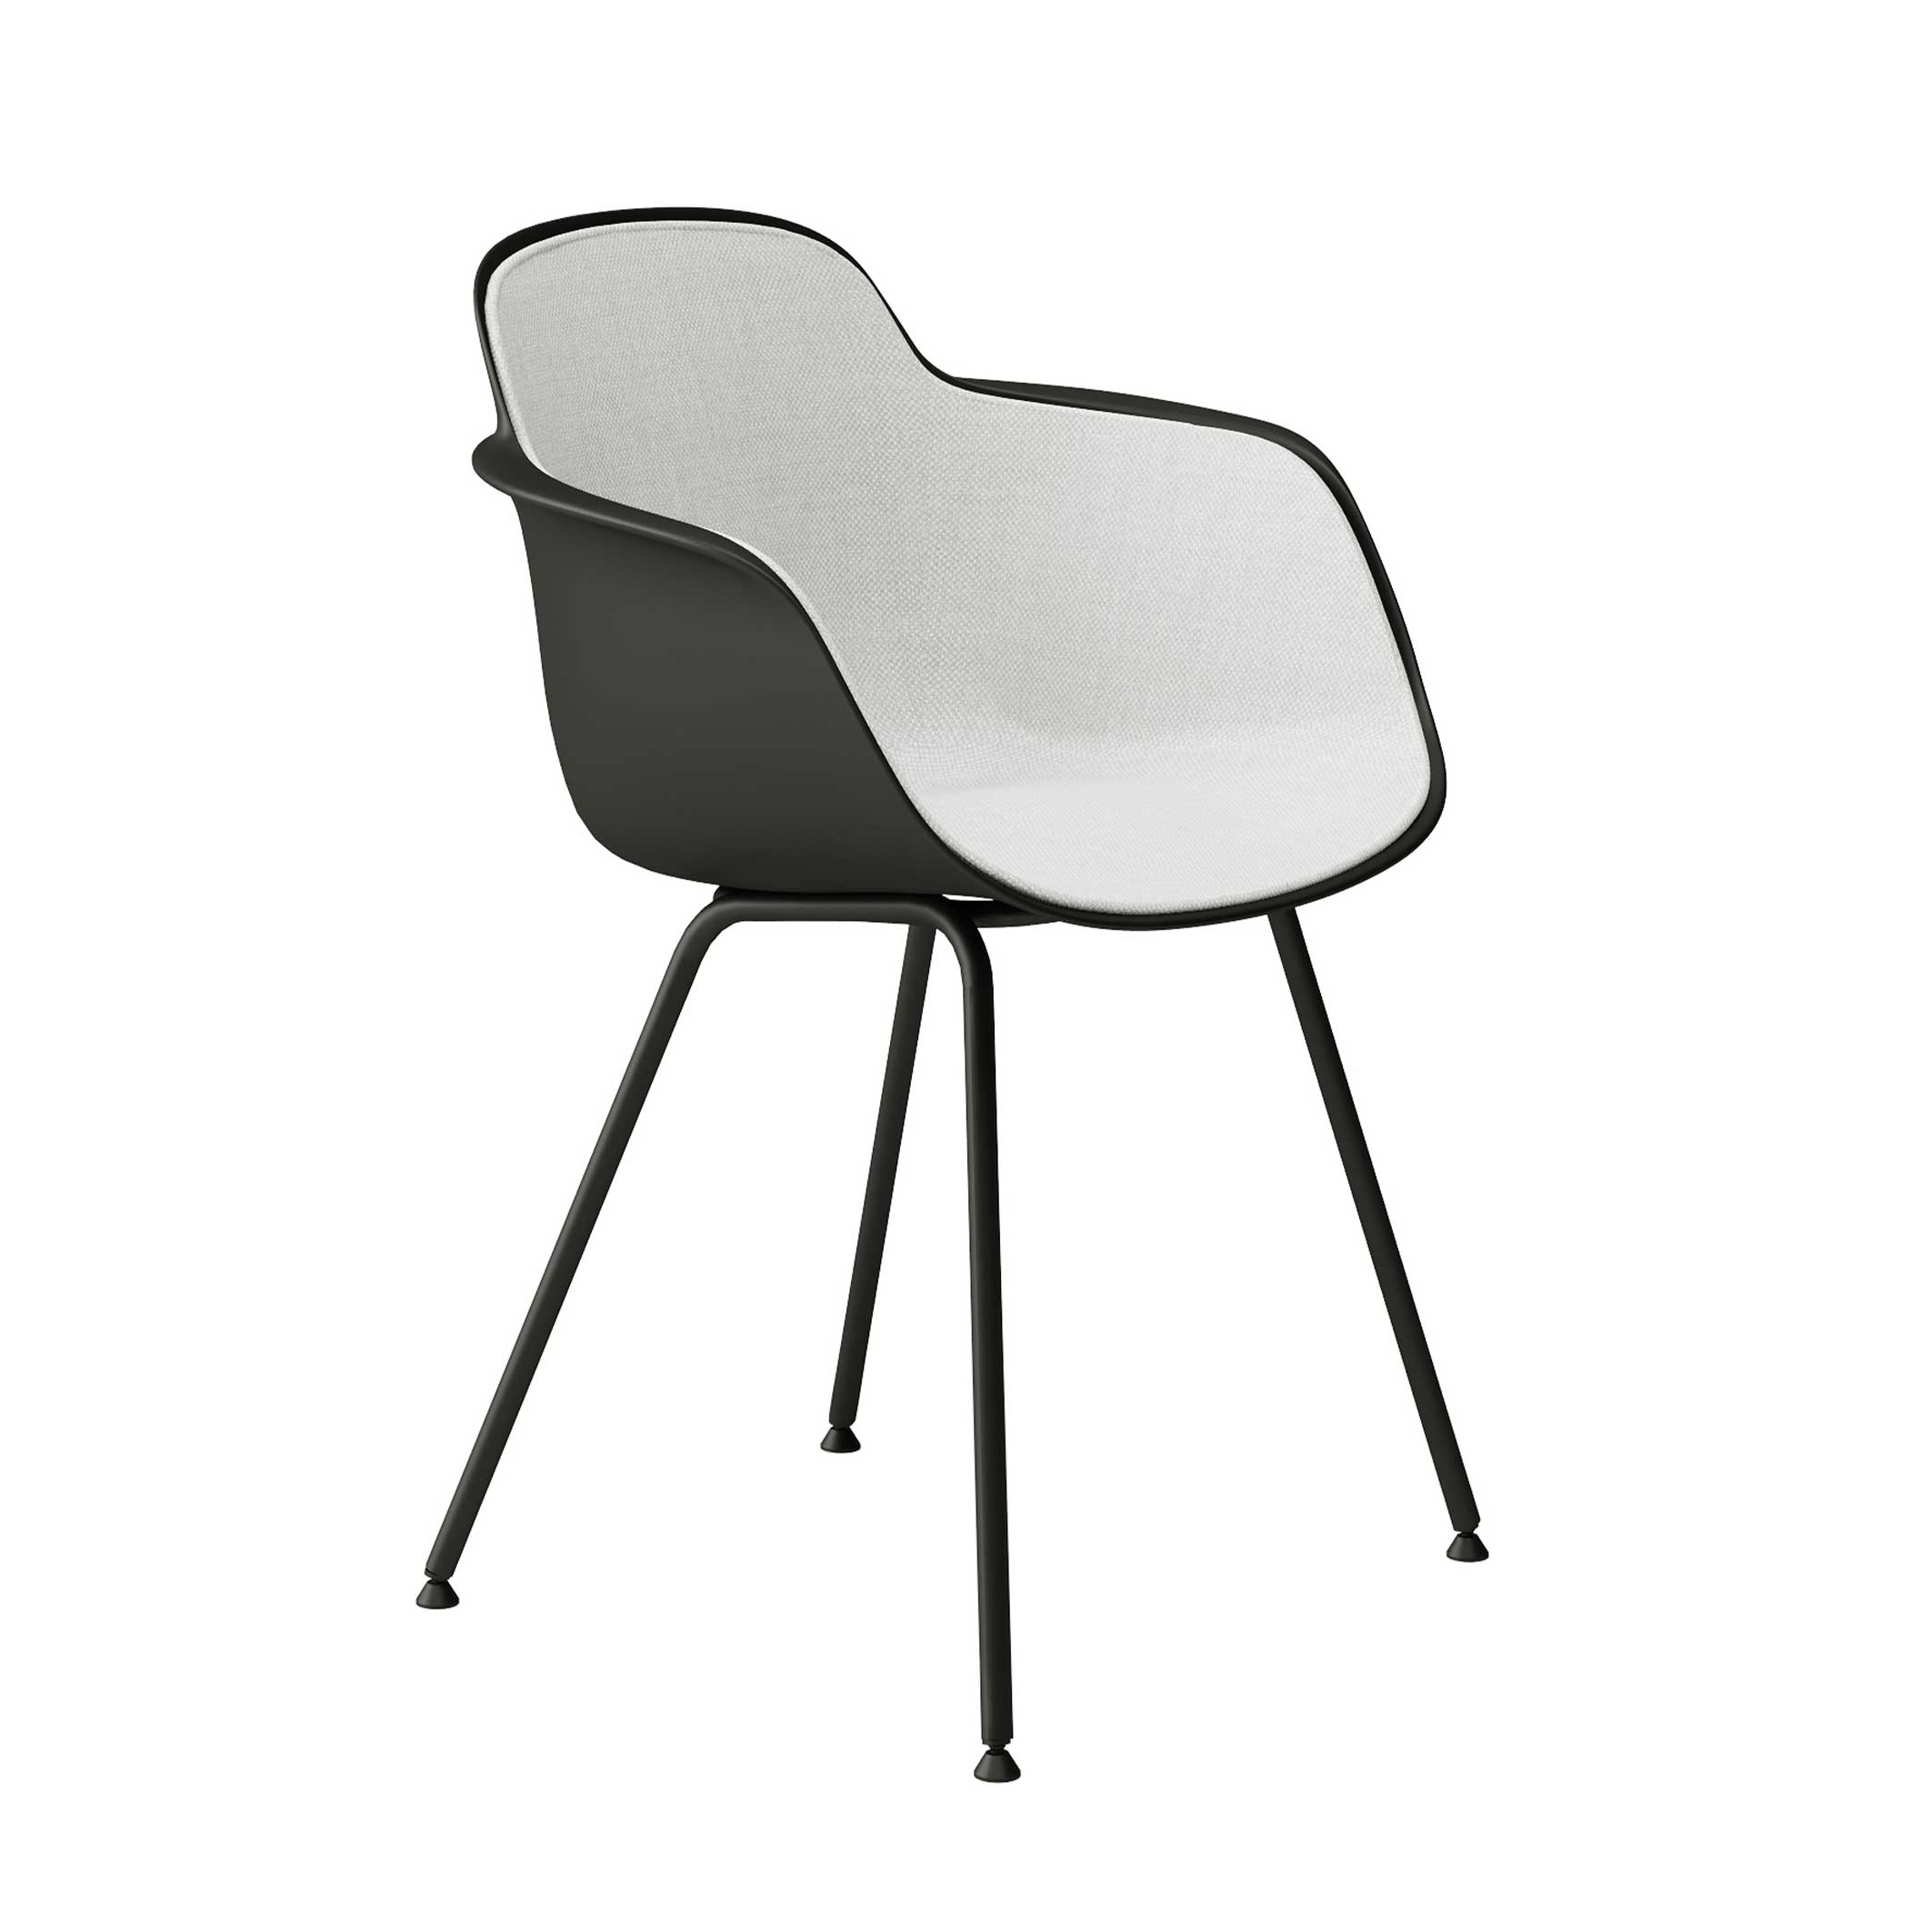 Sicilia Chair 4 Legs Full Upholstered Panel